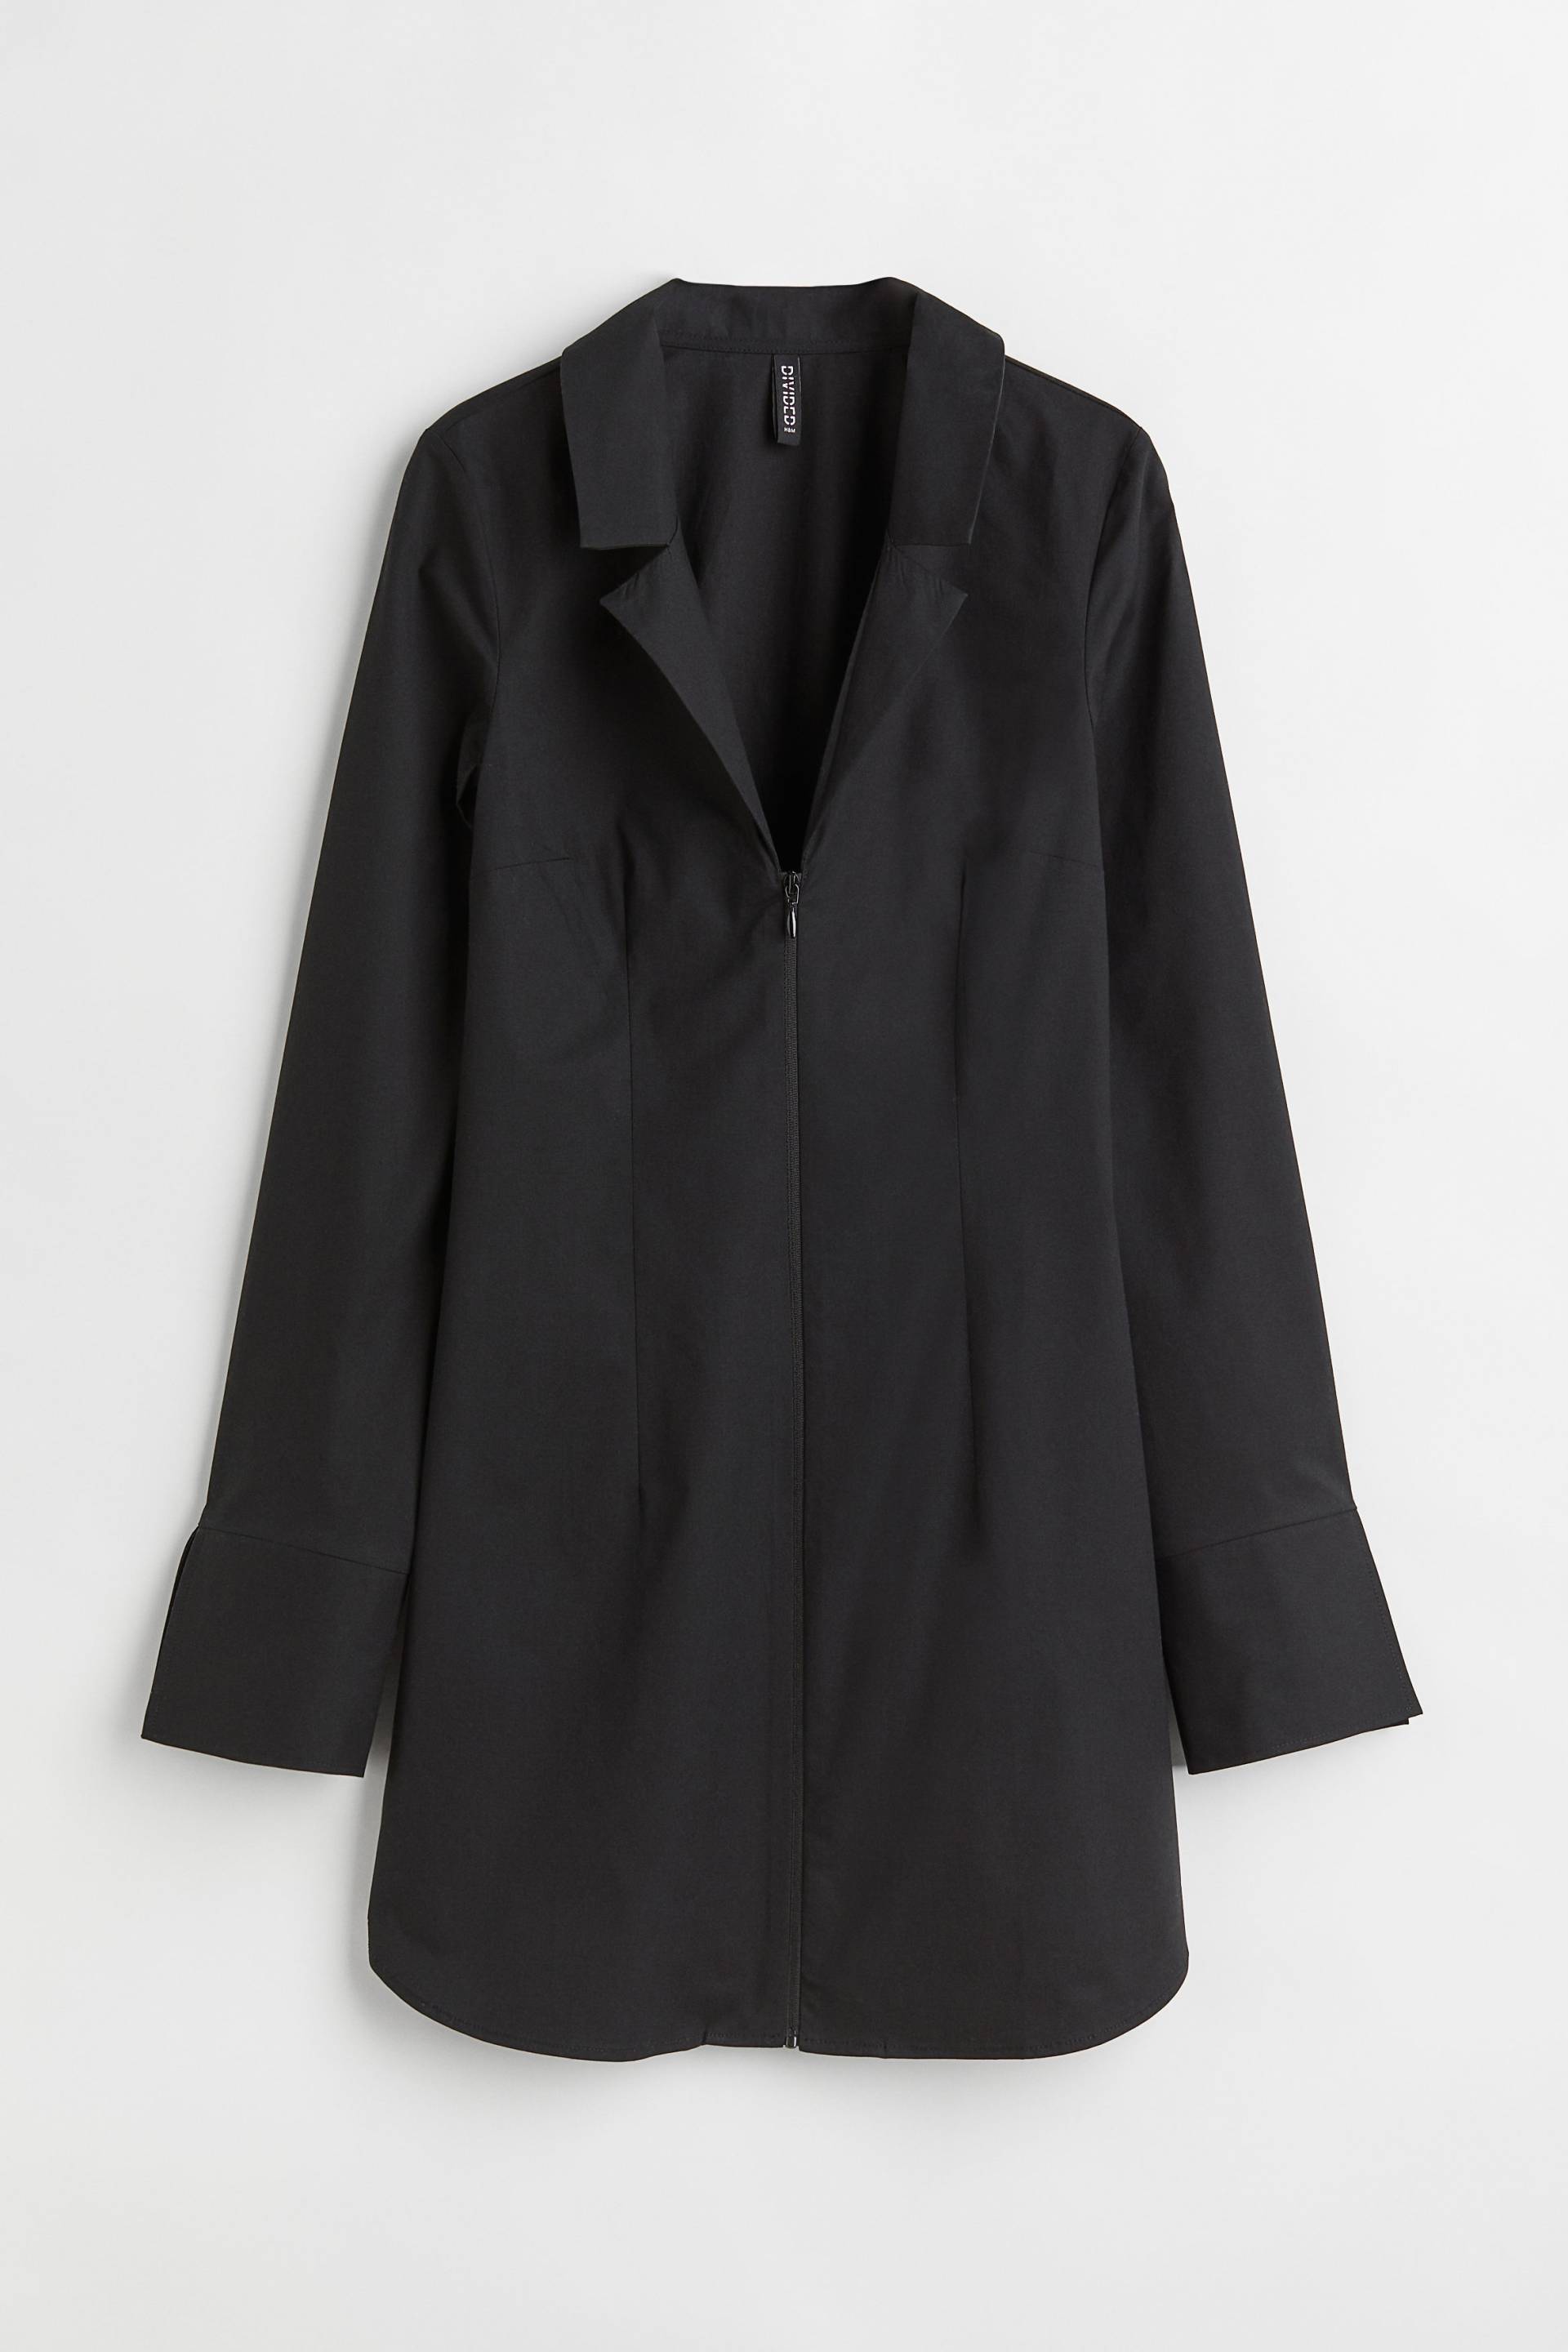 H&M Kurzes Blusenkleid Schwarz, Alltagskleider in Größe 34. Farbe: Black von H&M